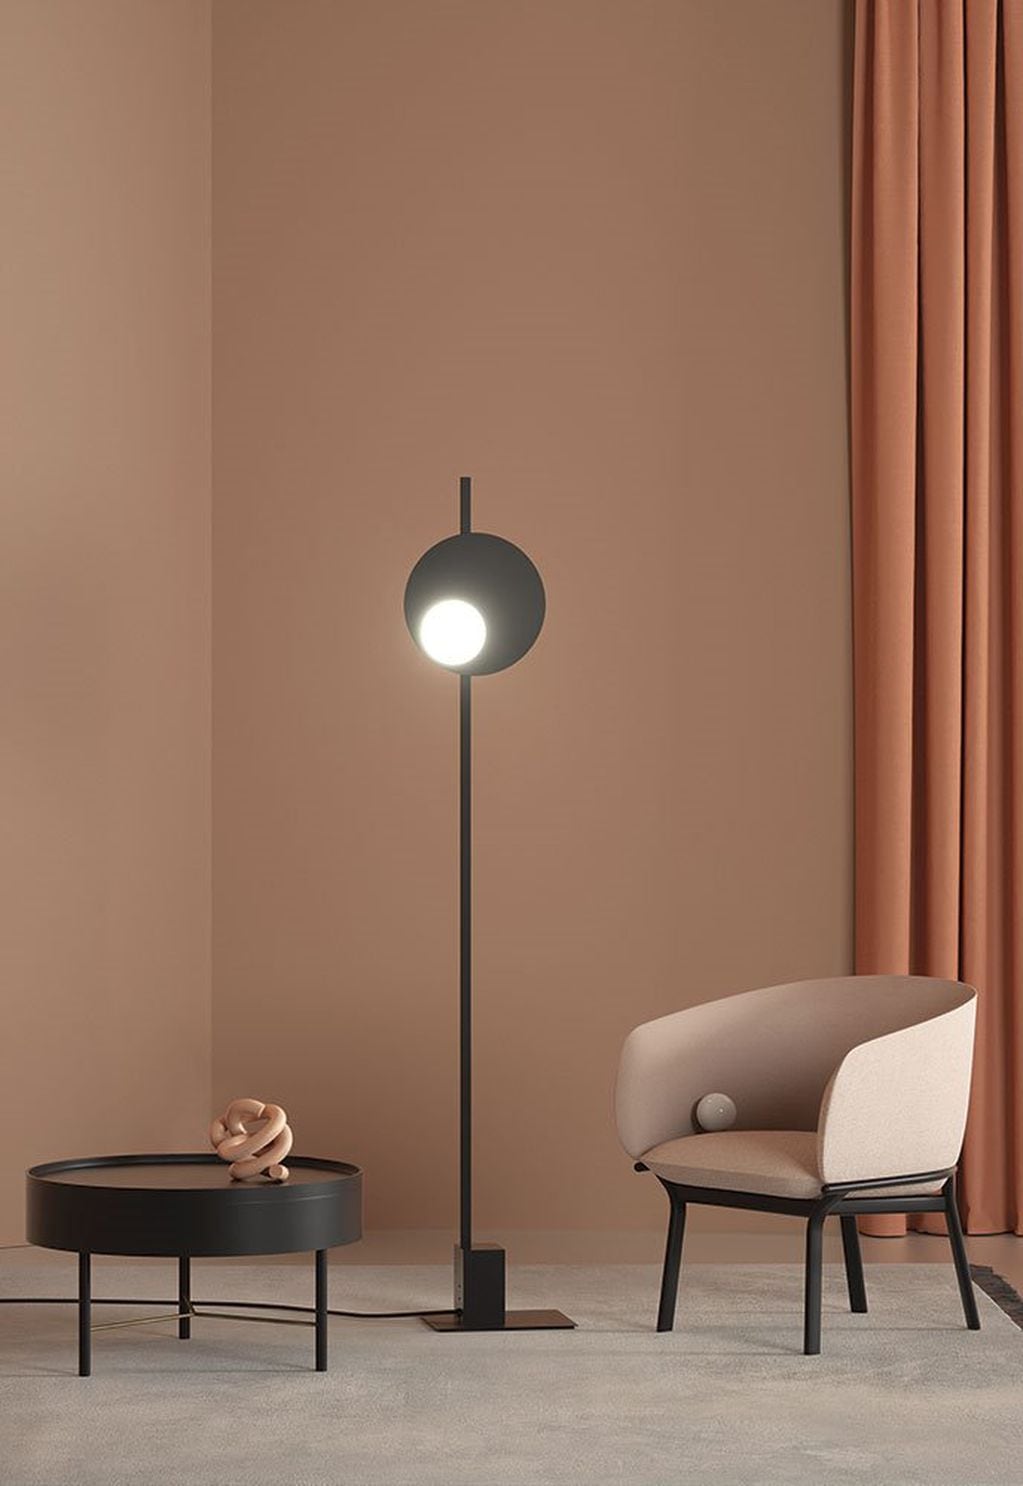 Lámparas con una sola pata, ideales para generar espacios cómodos y amplios.